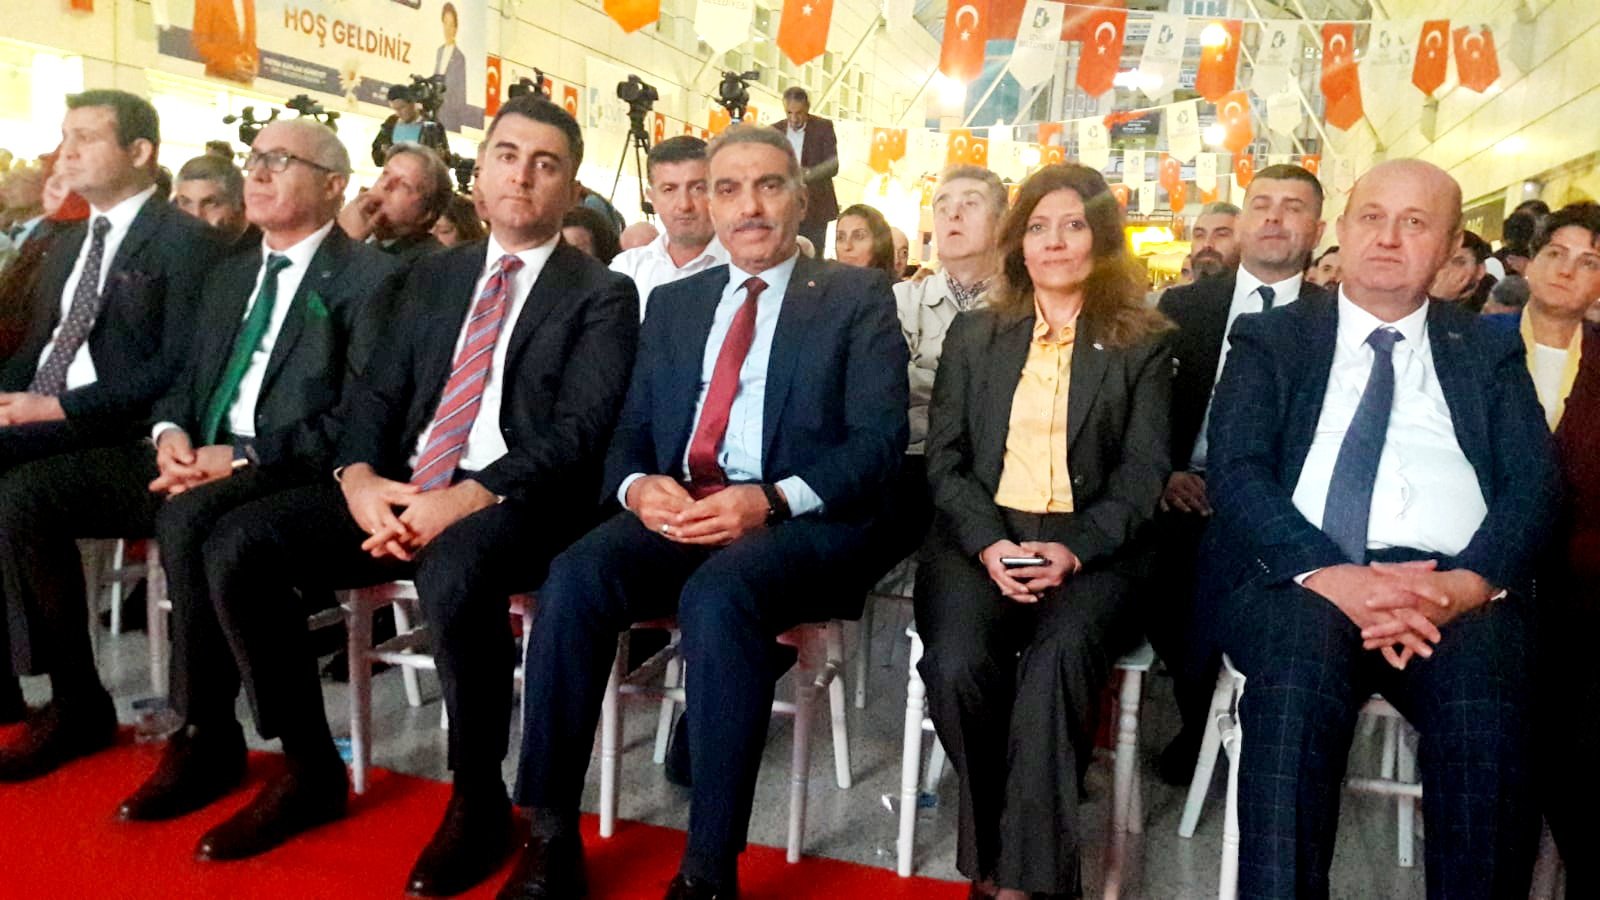 İzmit Belediye Başkanı Hürriyet'in,göreve geldiği 41 ay da gerçekleştirdikleri hizmetlerin lansman programına katıldık